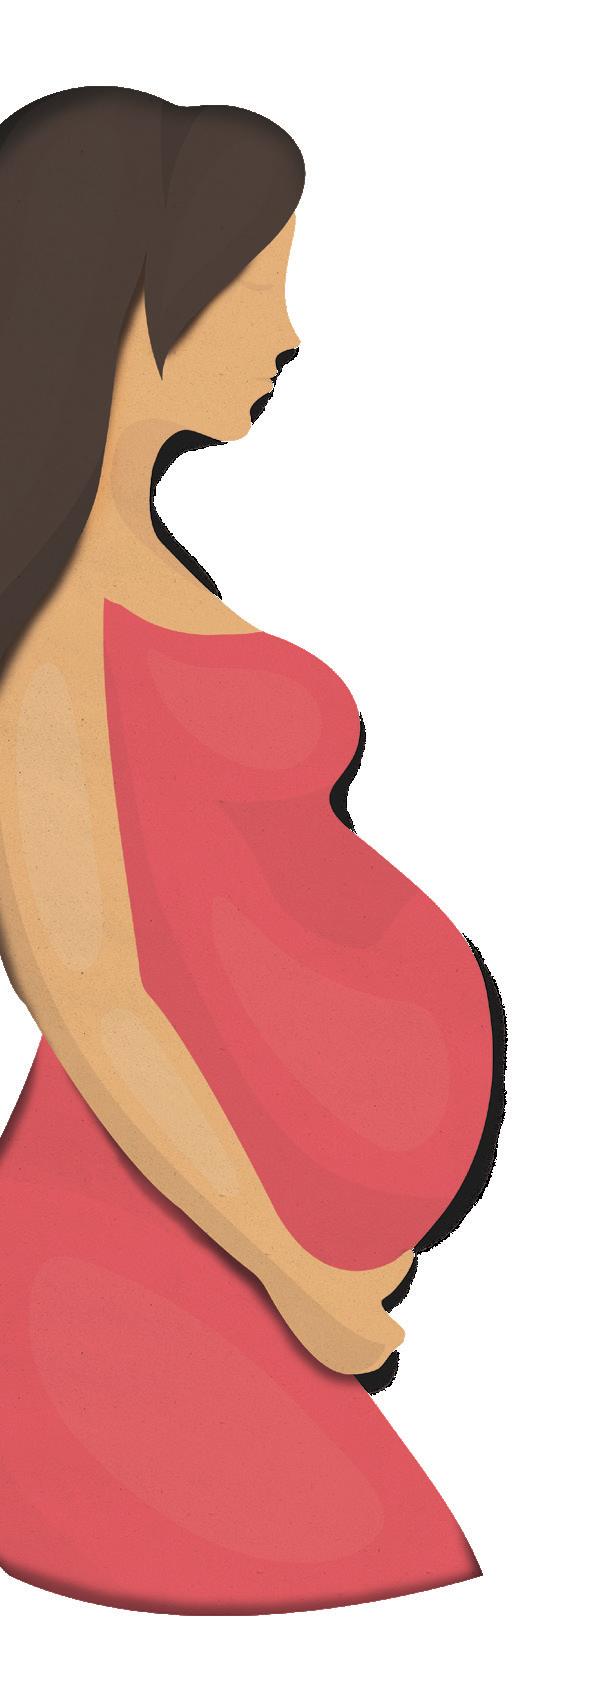 Se non vengono riscontrate particolari complicazioni, durante una gravidanza il periodo ideale per viaggiare è il secondo trimestre: superata la nausea mattutina che accompagna i